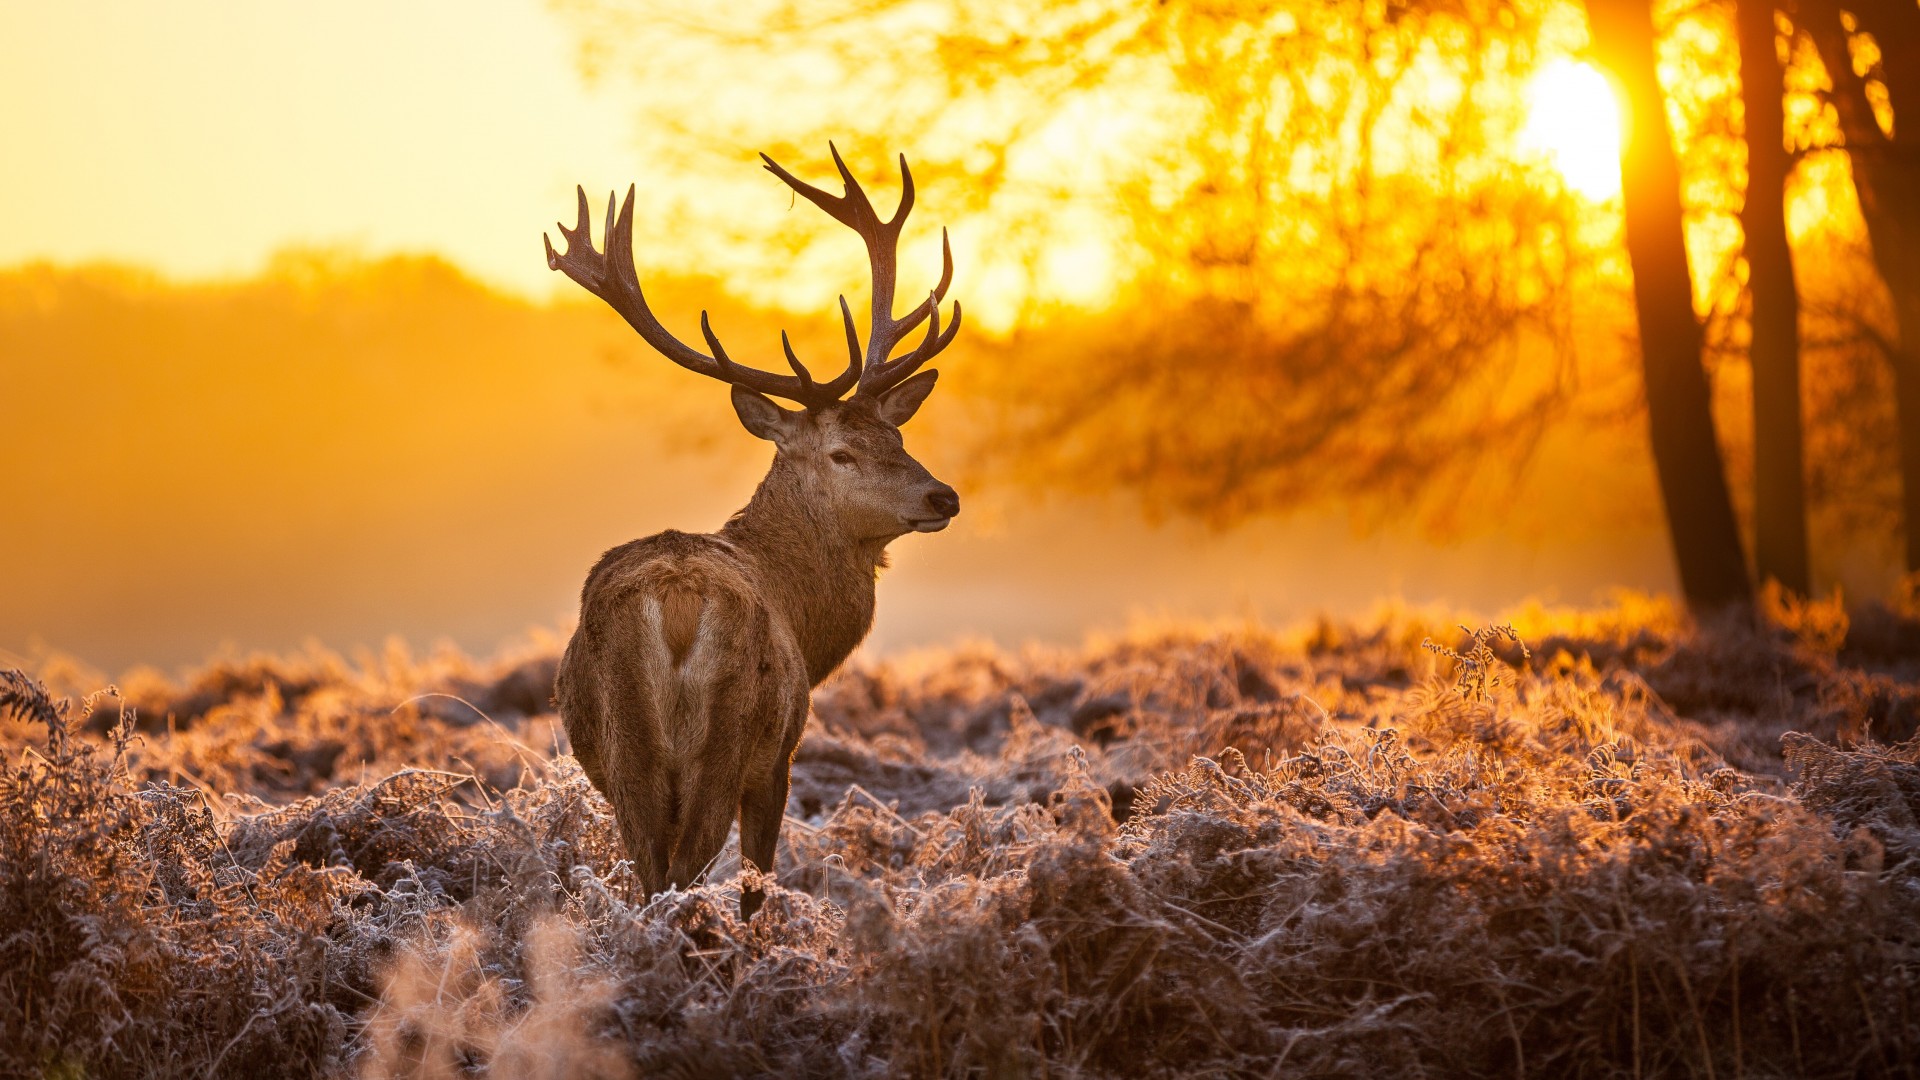 Deer Wallpaper Best